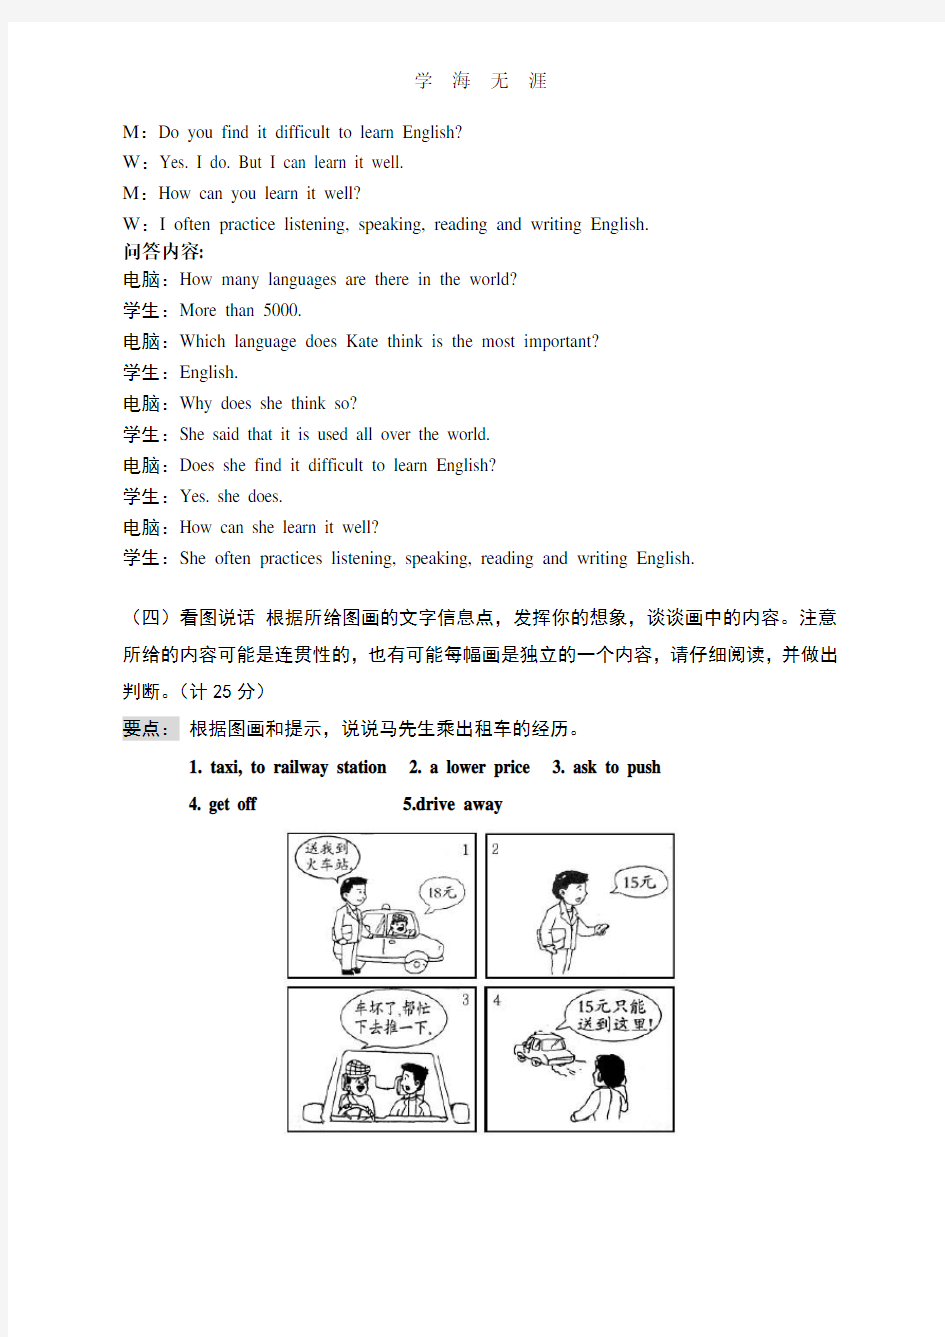 八年级英语口语考试模拟试题.pdf